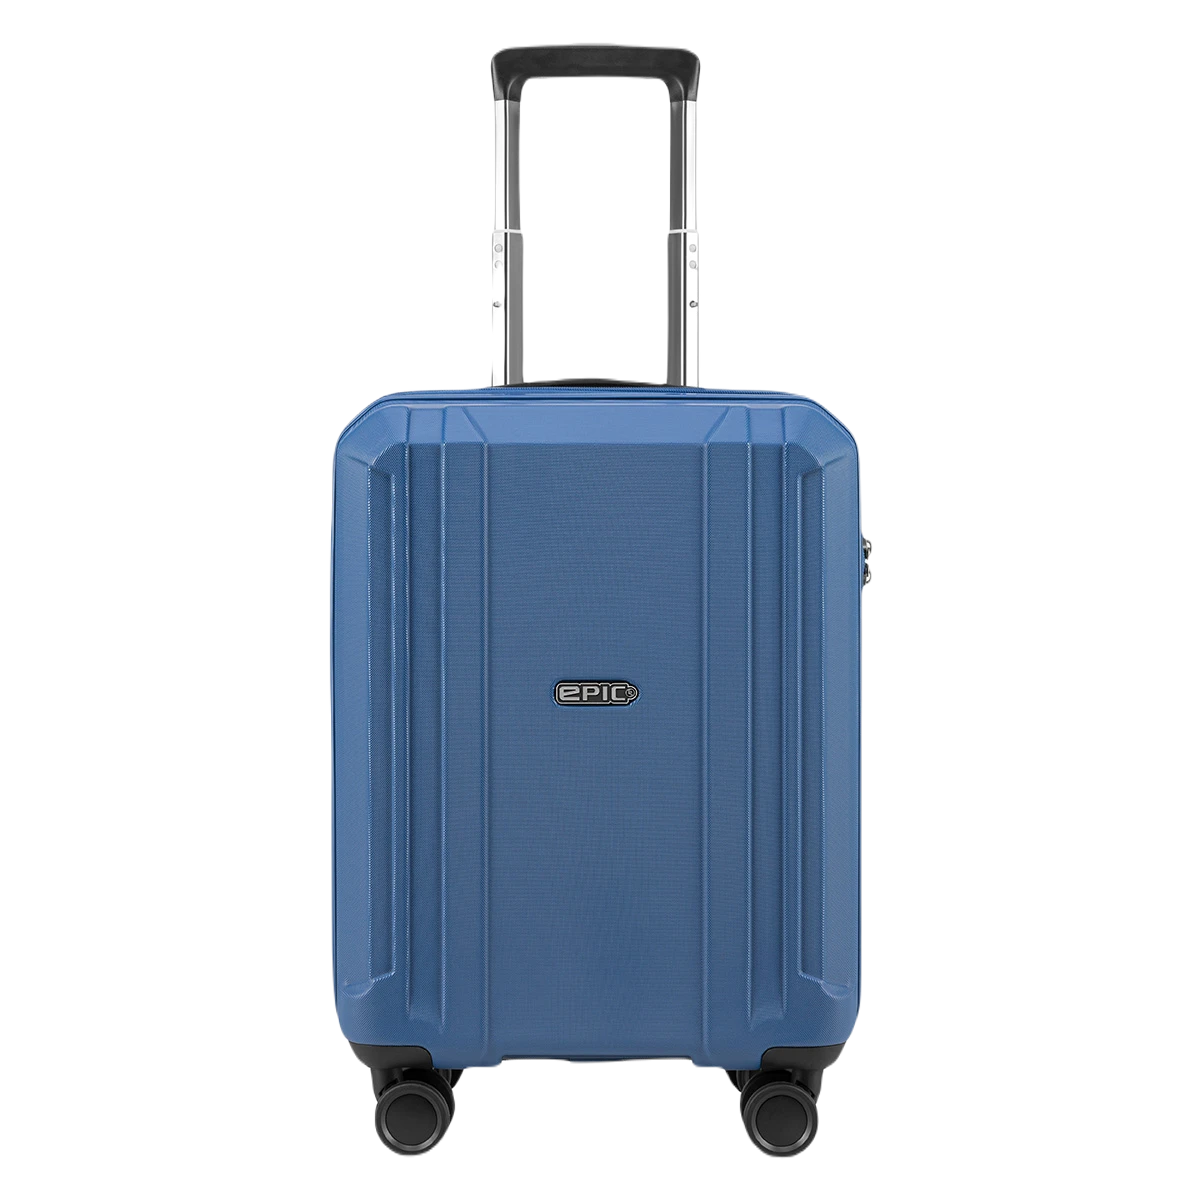 Epic kuffert, airwave neo, blå, håndbagage størrelse, set forfra